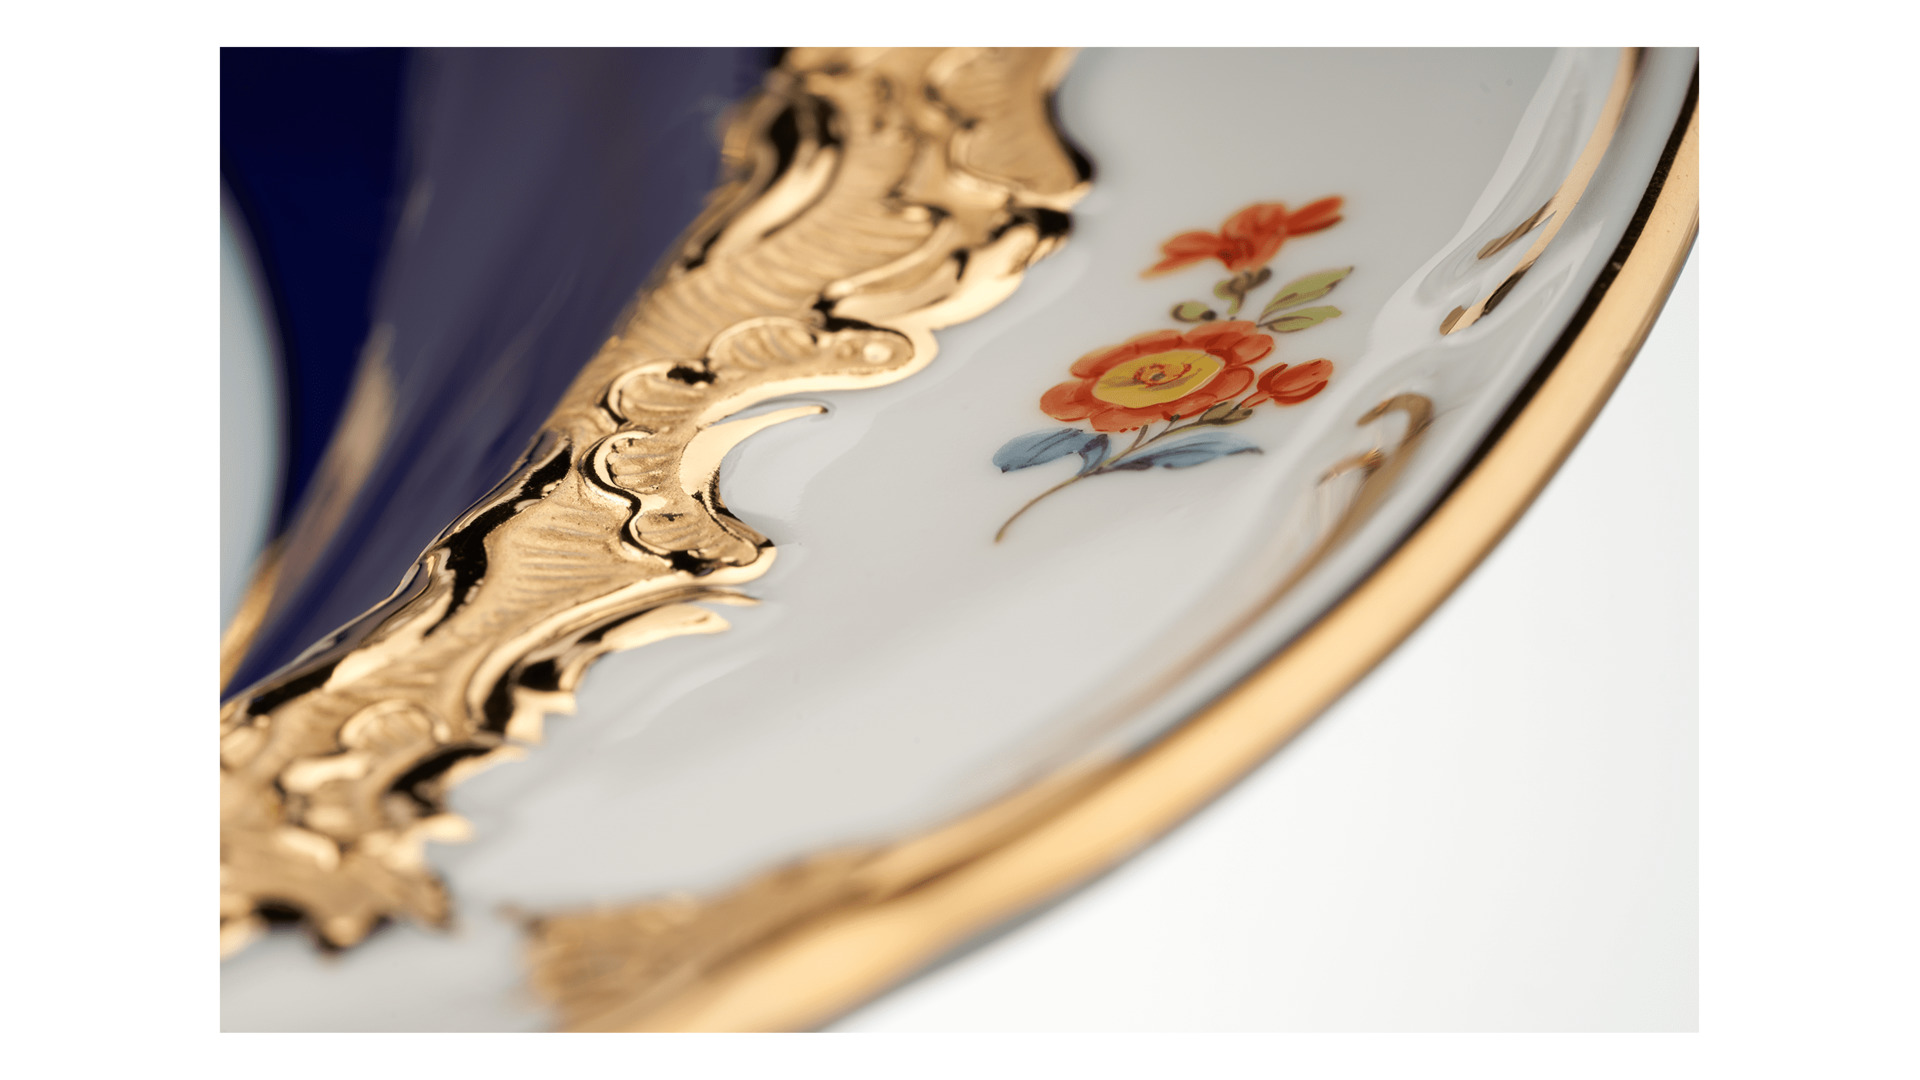 Сервиз столовый Meissen Форма - Б, россыпь цветов, кобальт на 6 персон 20 предметов, фарфор